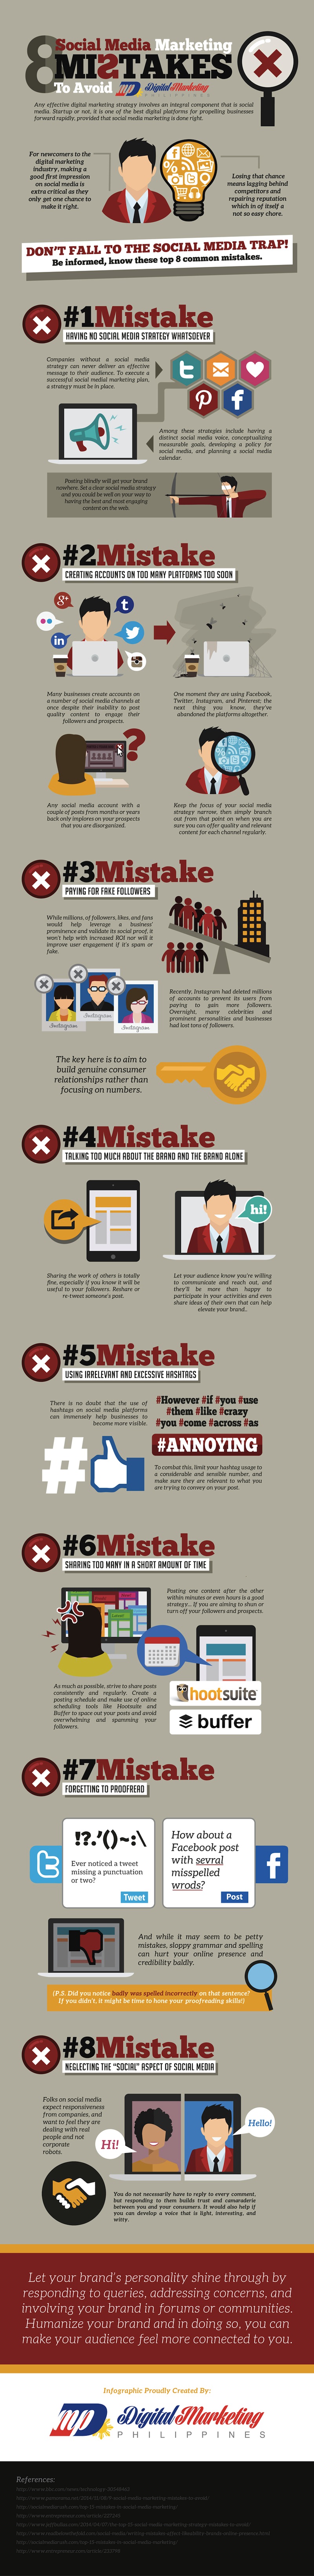 8-Social-Media-Marketing-Mistakes-to-Avoid